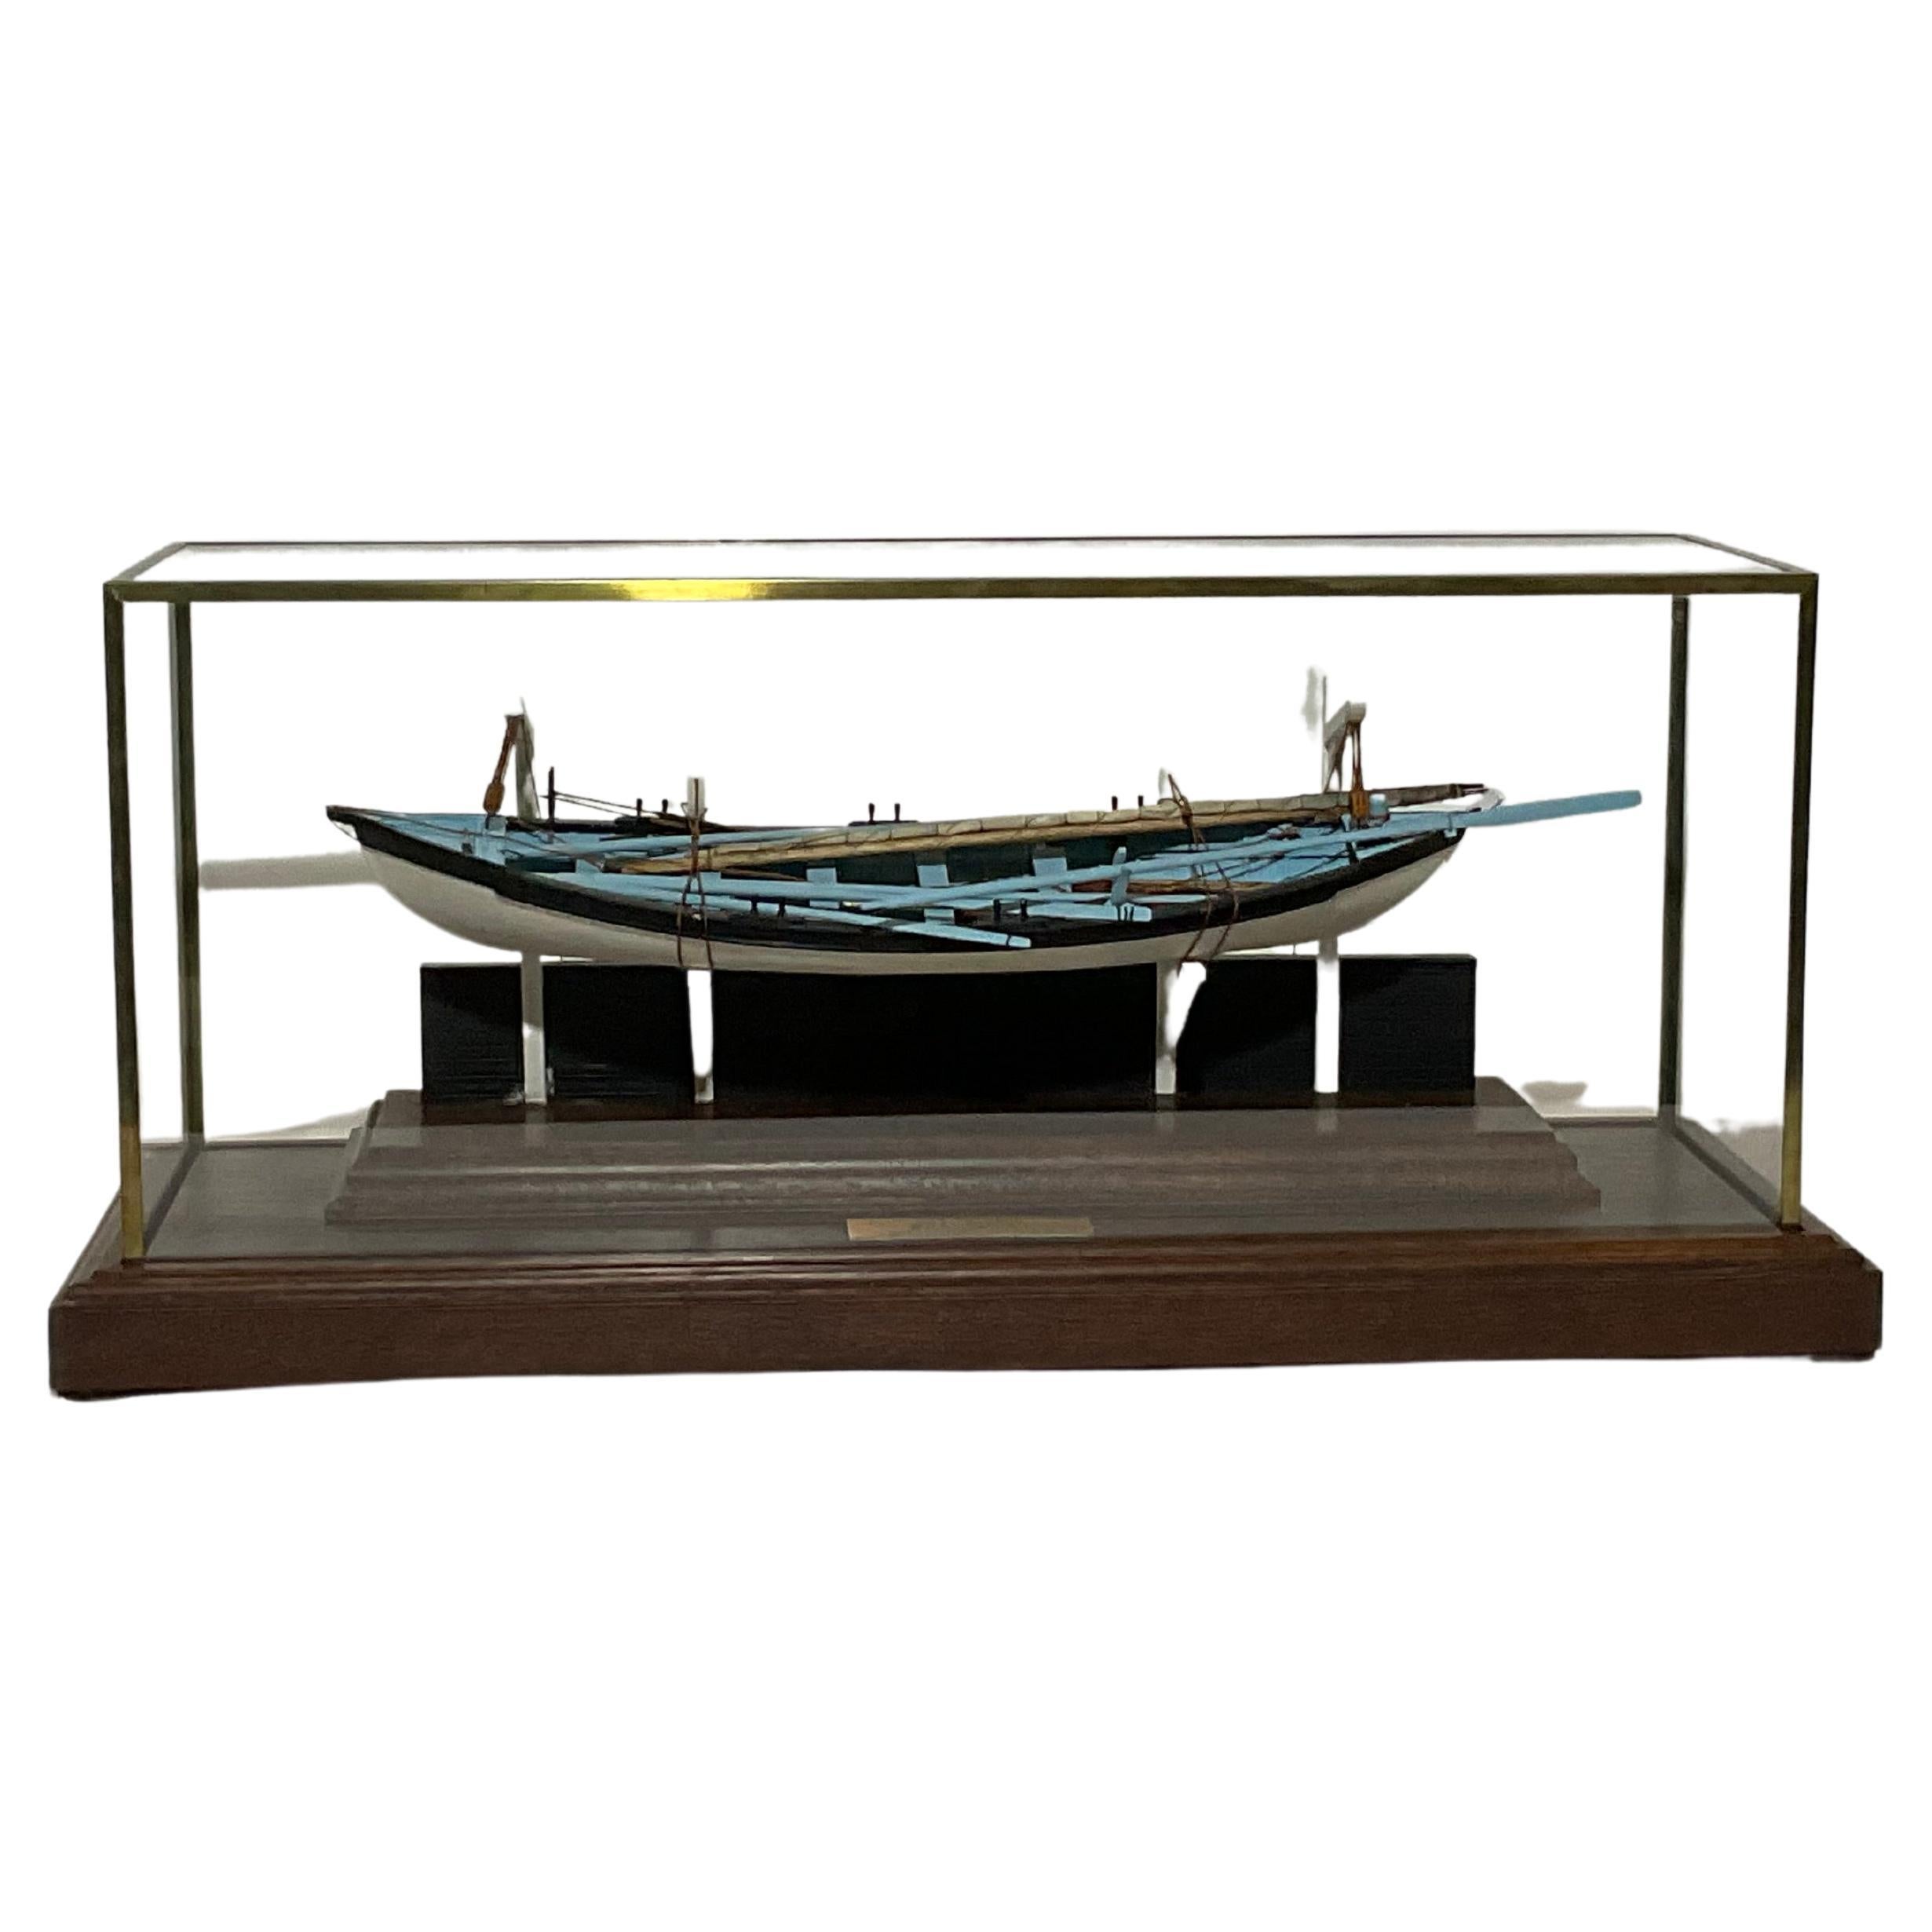 Modèle de bateau à baleinier de William Hitchcock